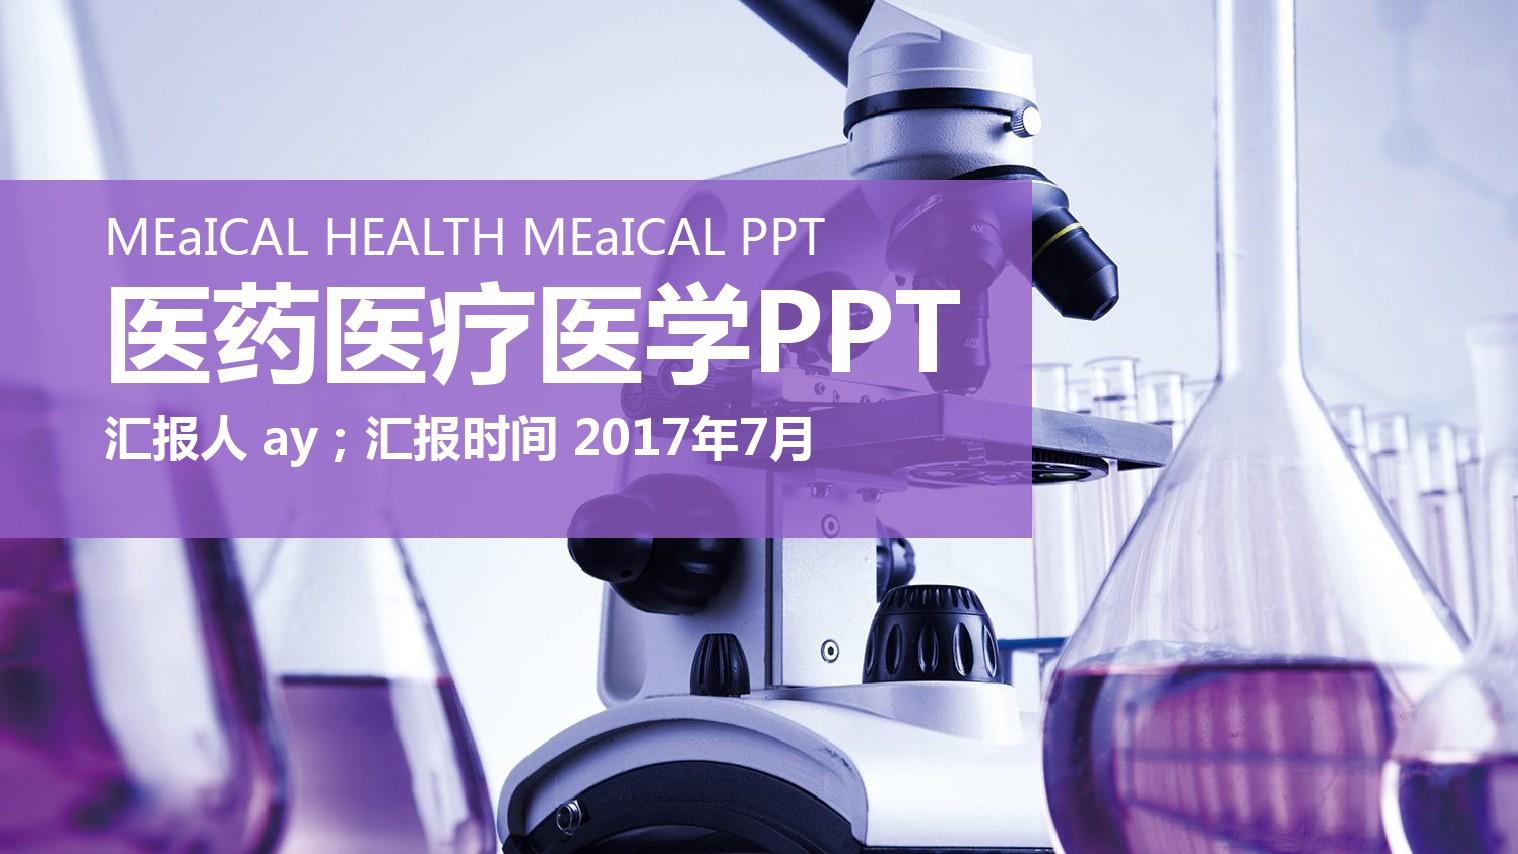 【精选】化学实验 医药医疗 医学实验PPT模板ppt精美模板